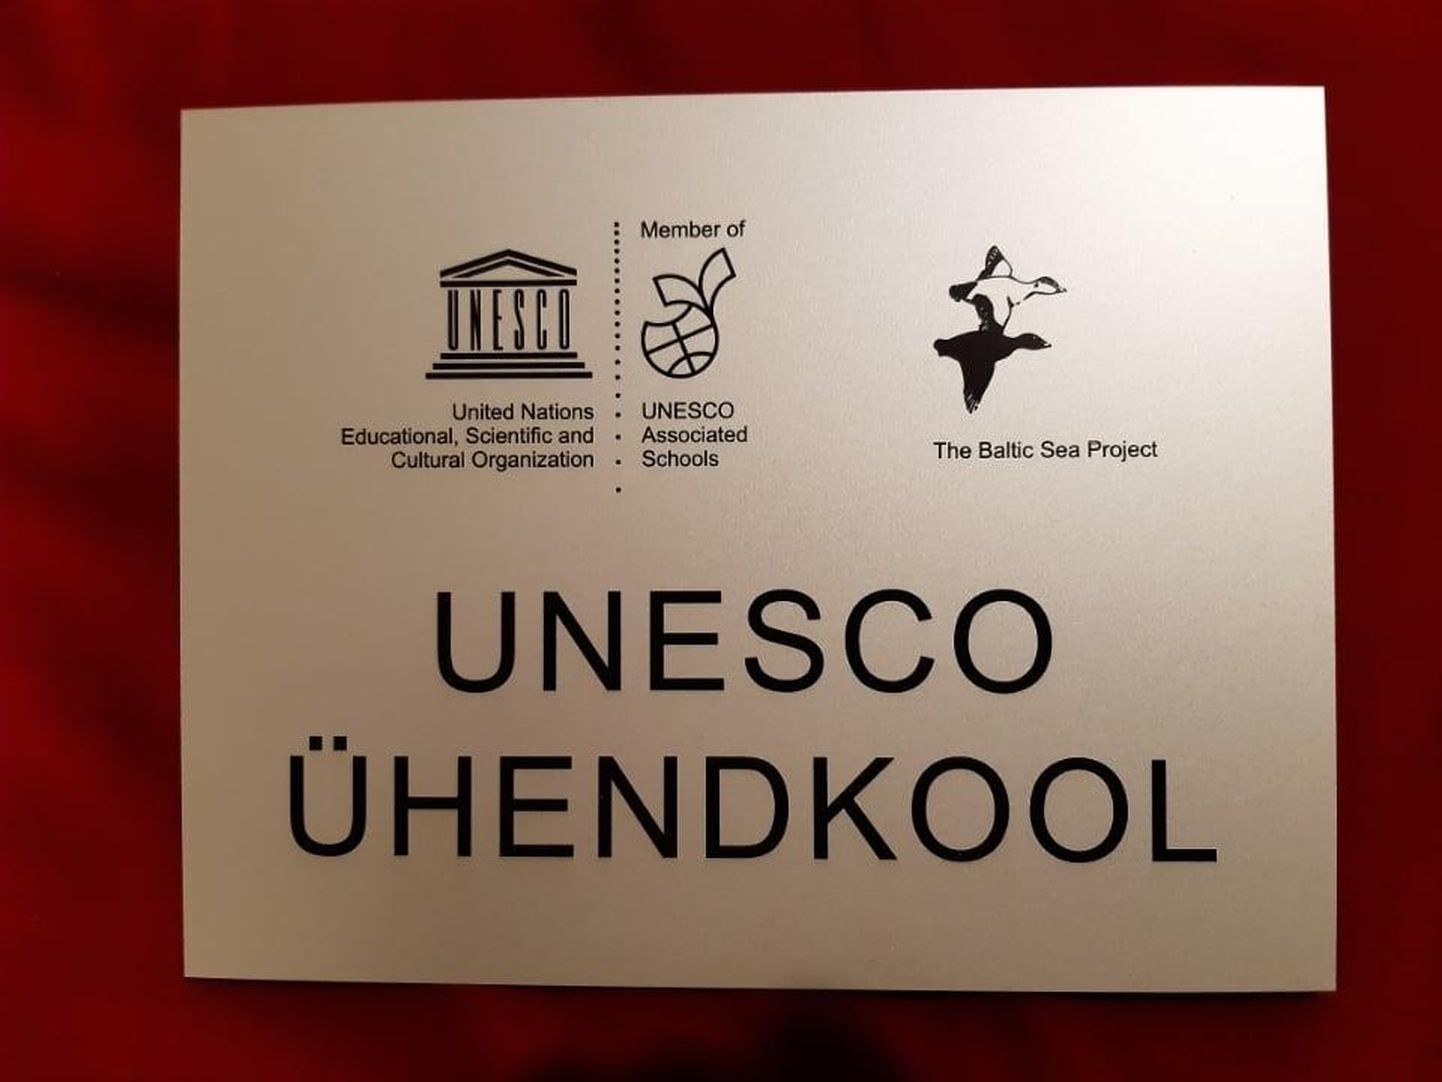 UNESCO ühendkoolide võrgustiku eesmärk on toetada inimestevahelist paremat läbisaamist ja rahu maailmas.